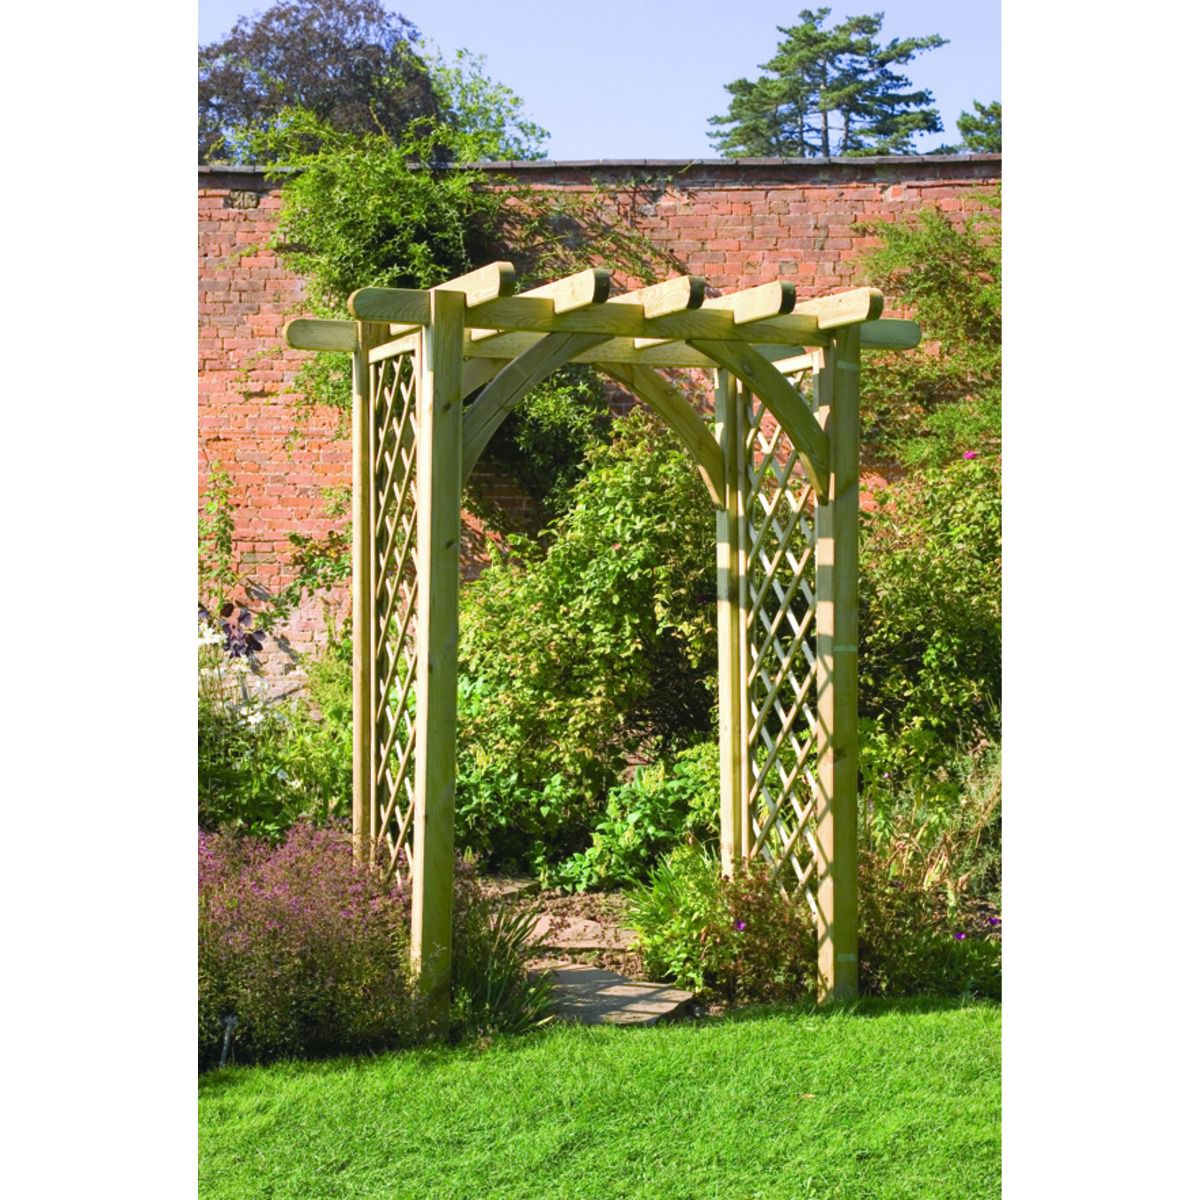 Image of Forest Garden Grieg Wooden Square Trellis Garden Arch - 1820 x 1360mm